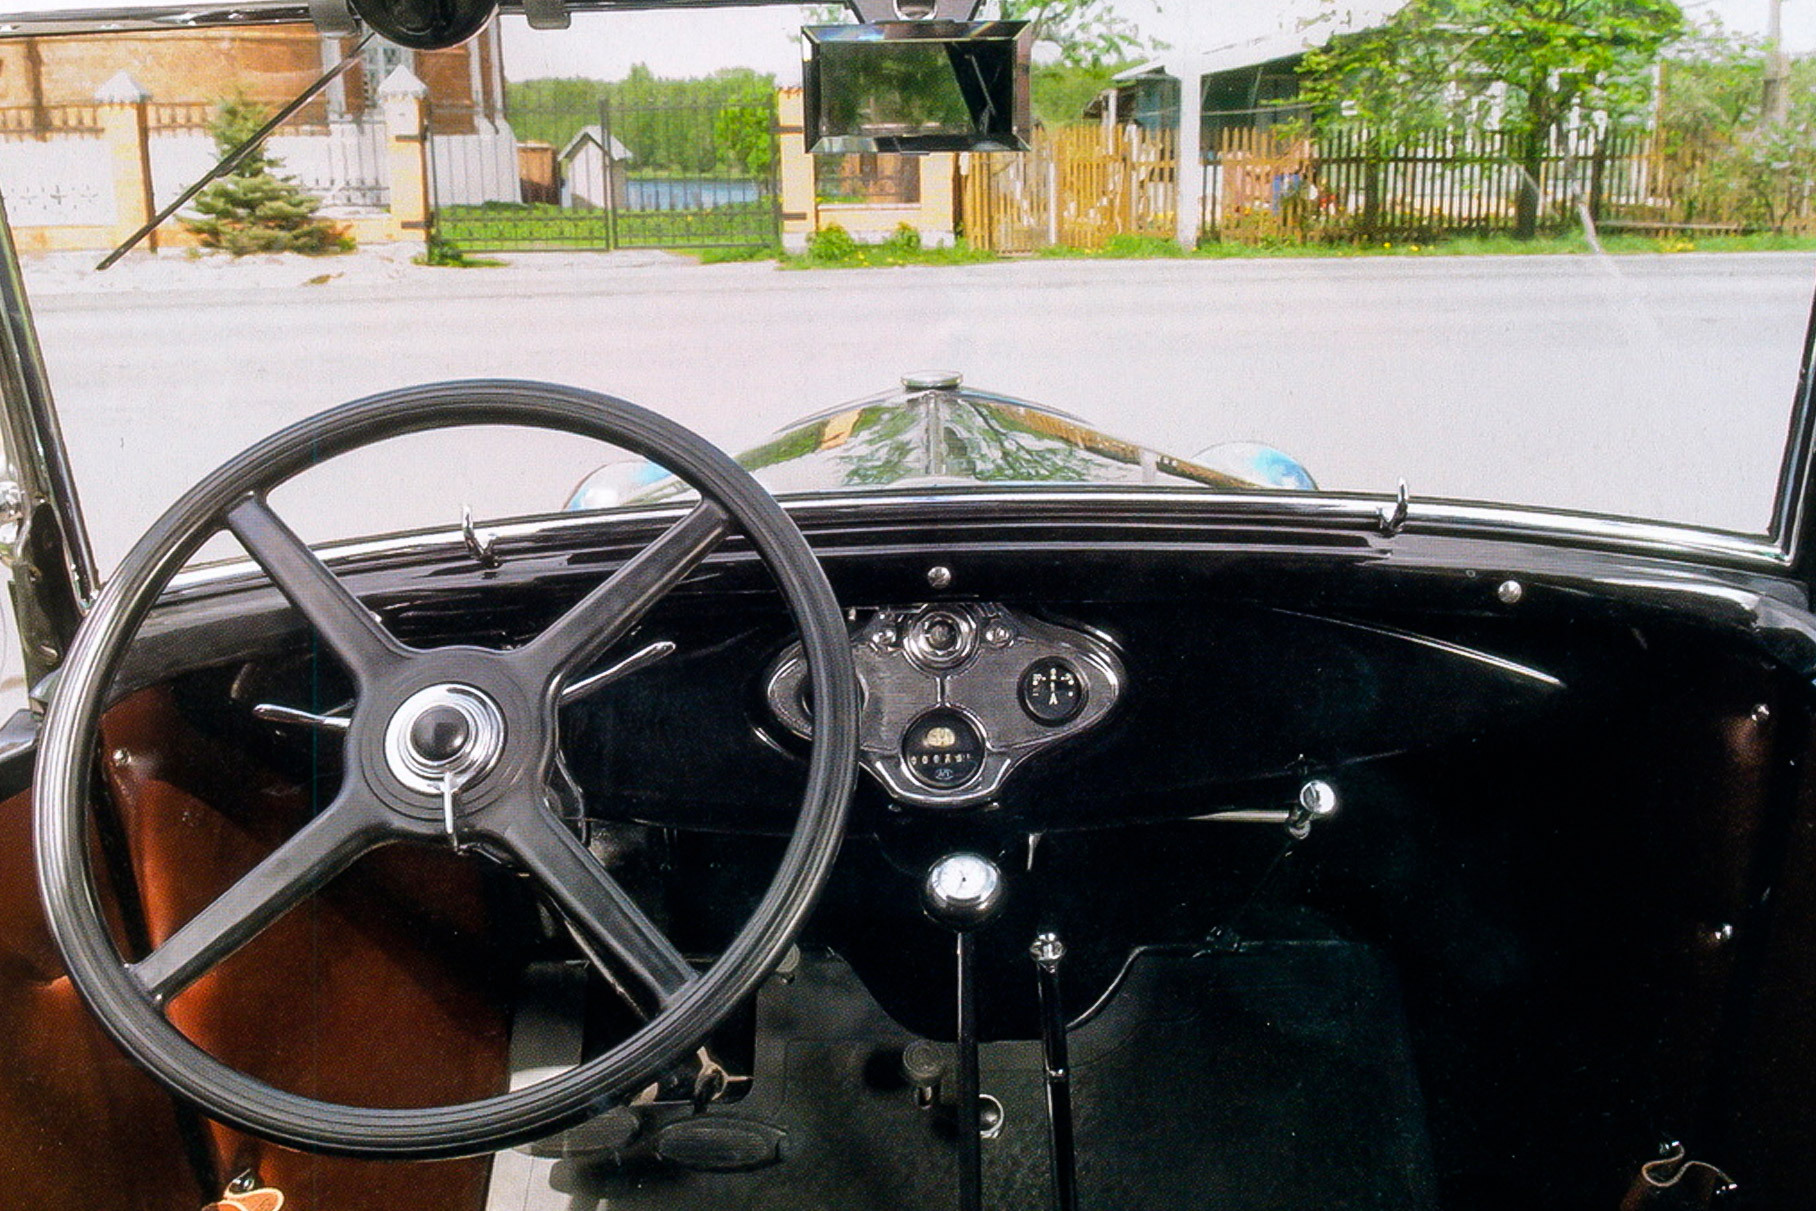 Передняя панель ГАЗ-А, унифицированного с Ford Model A. Аскетично, но уже понятно и сегодняшним водителям